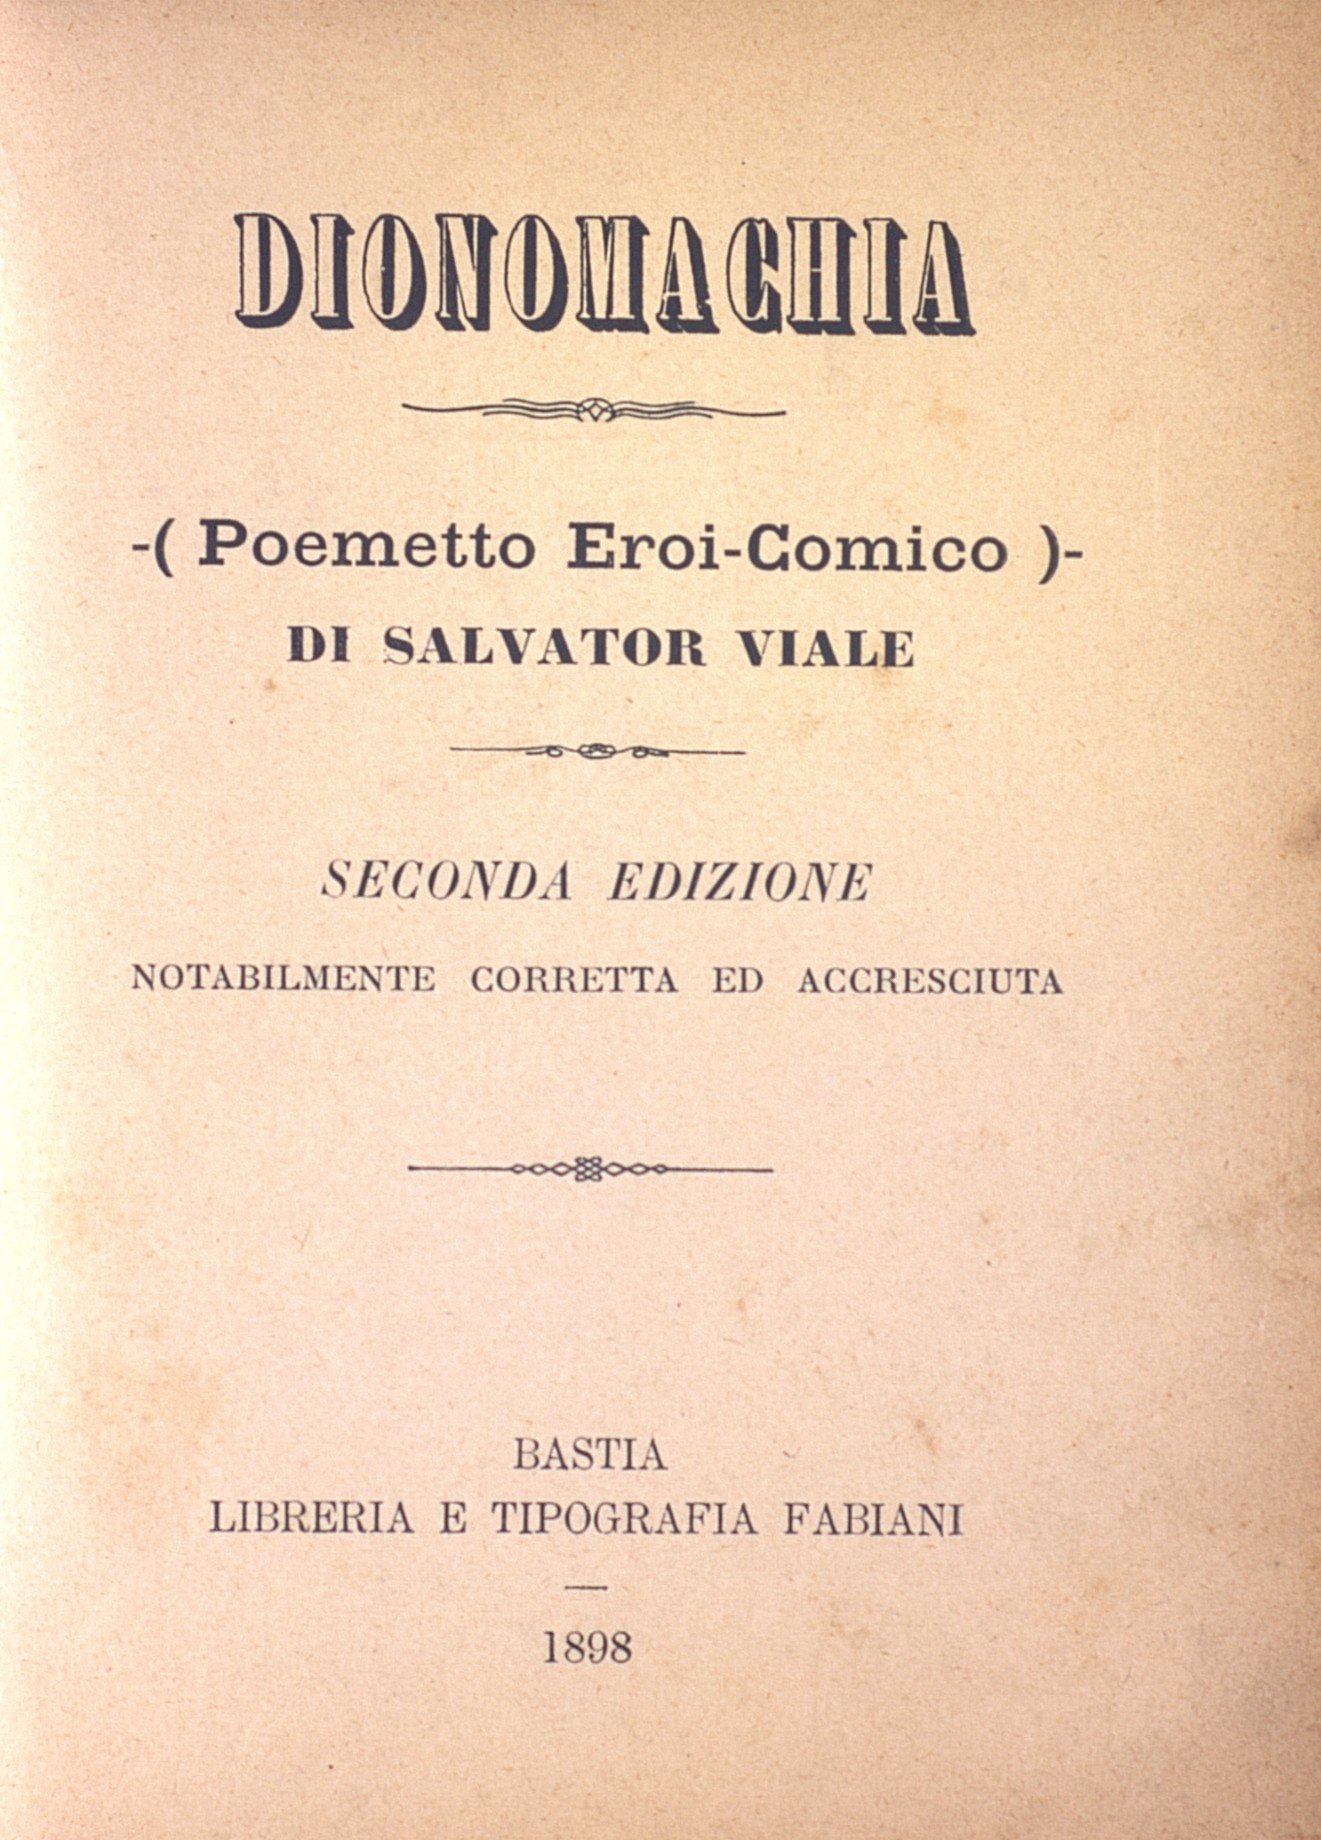 Dionomachia, poemetto eroi-comico di Salvador Viale, seconda edizione notabilmente correta ed accresciuta